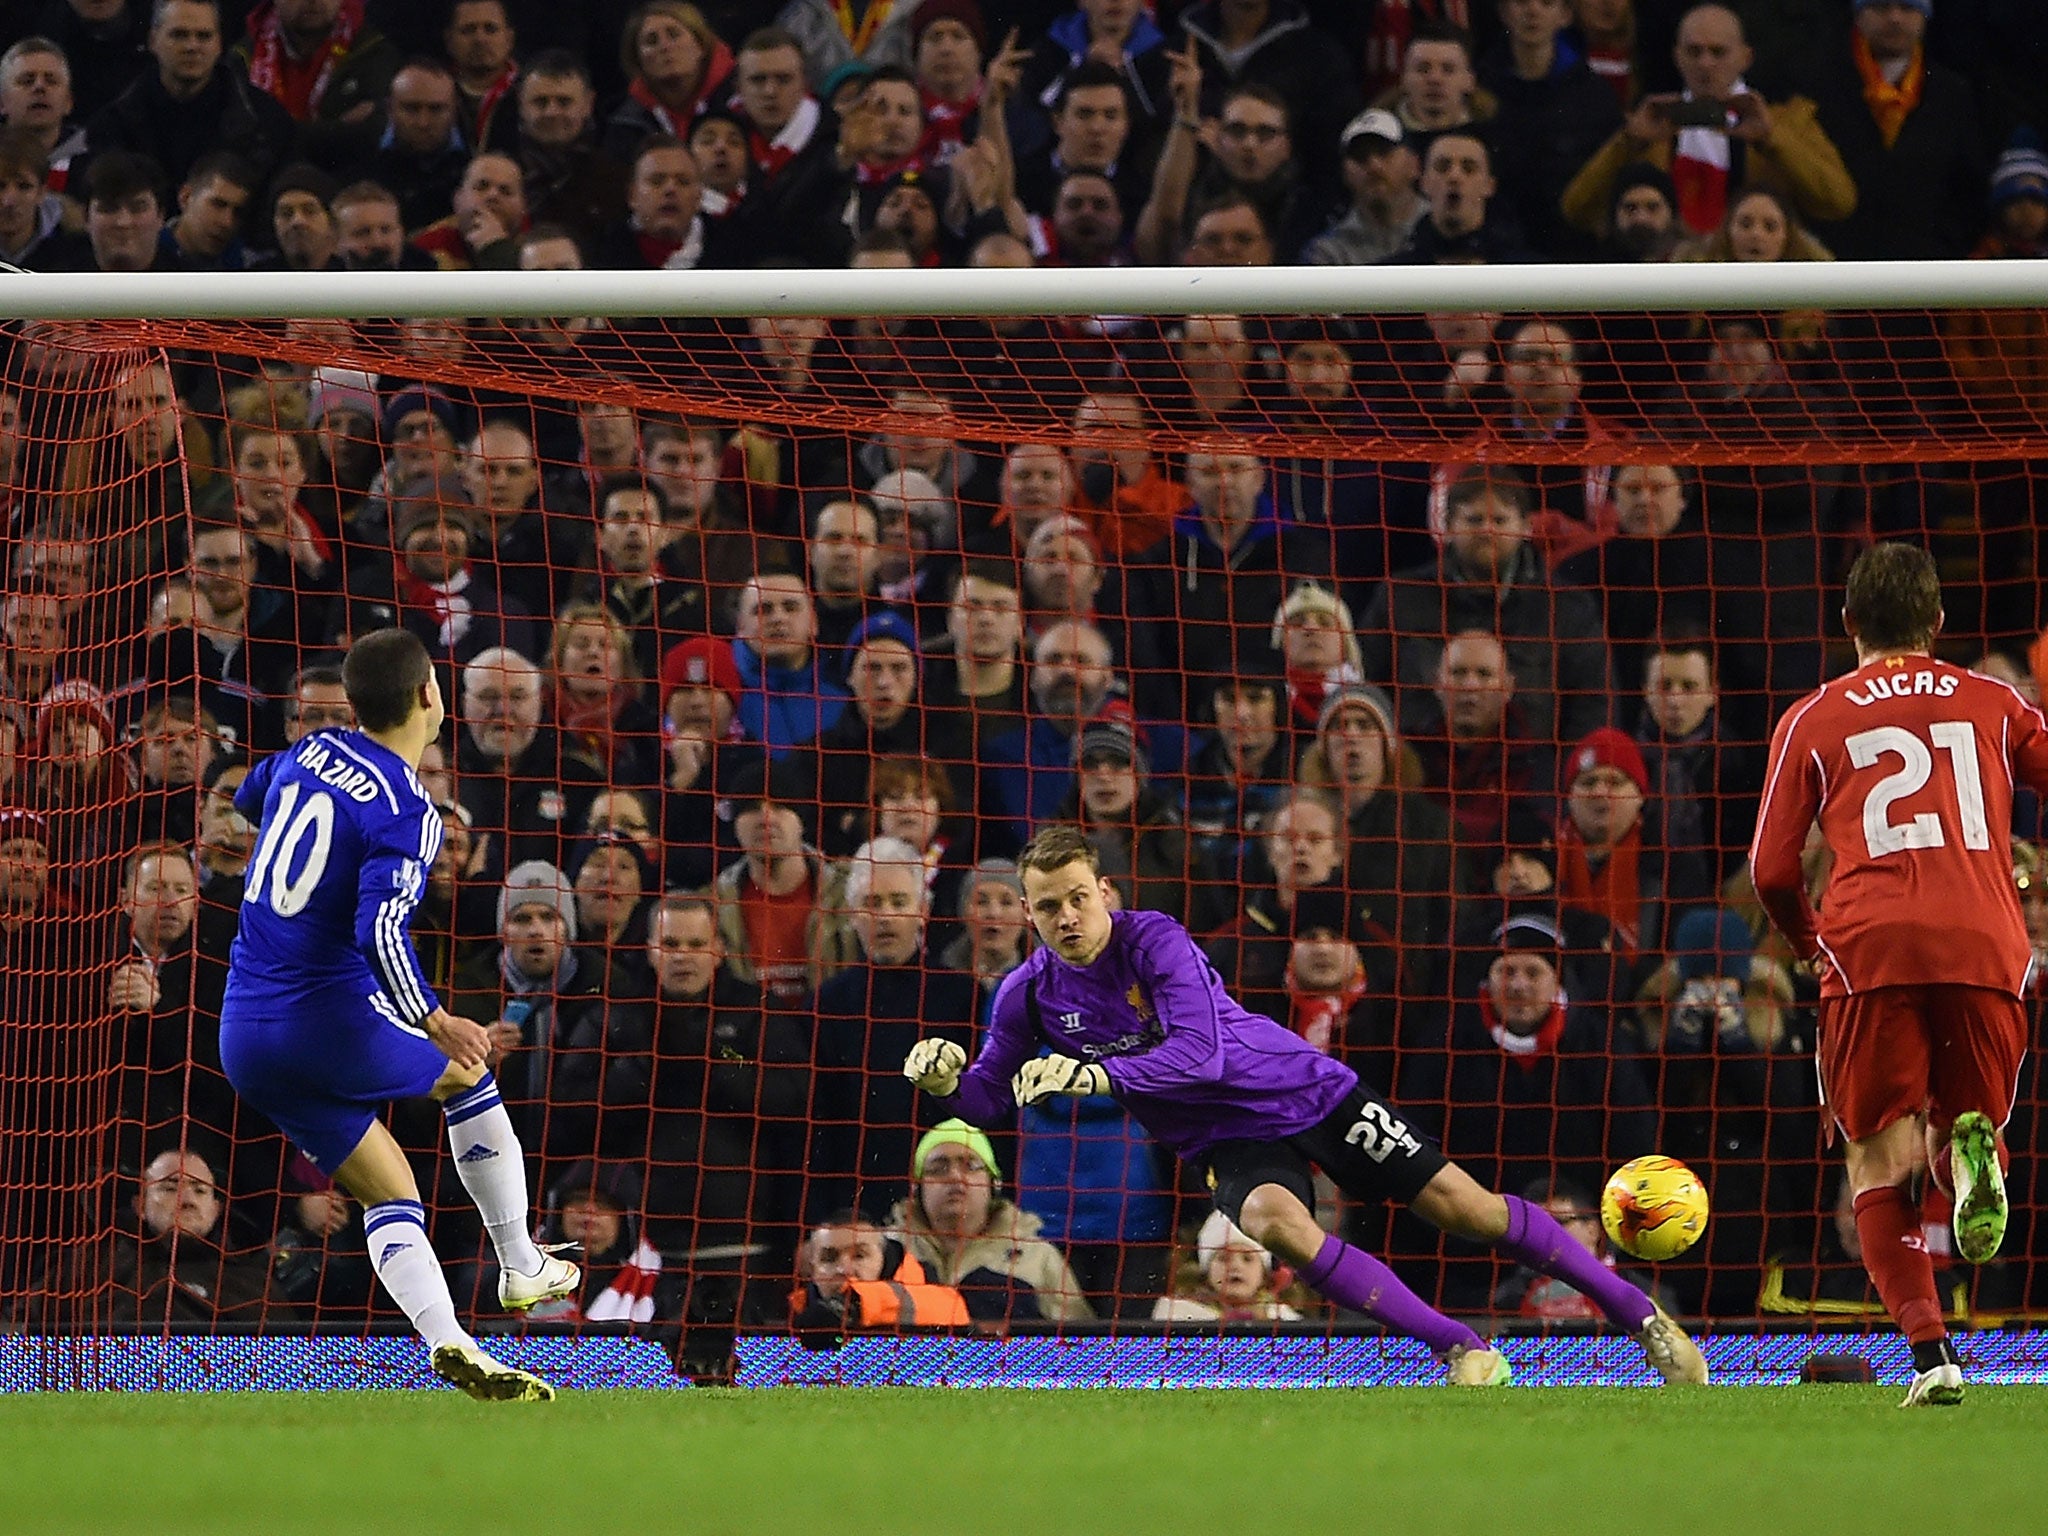 Eden Hazard puts Chelsea in front from the spot